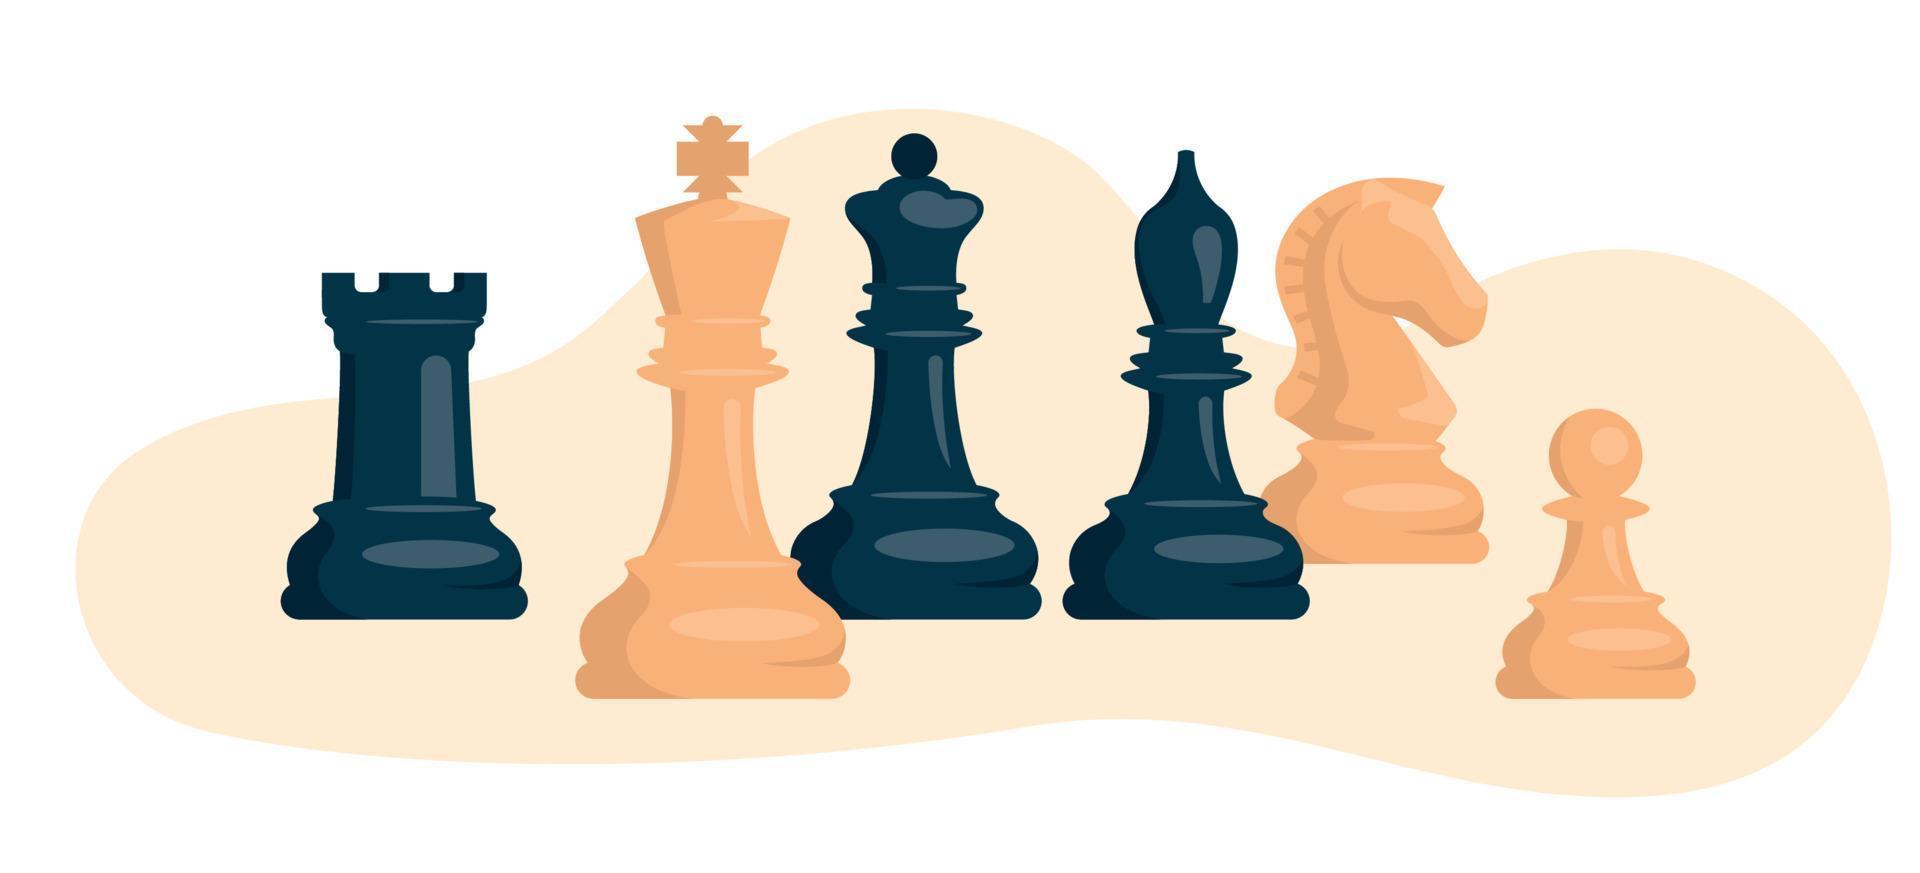 xadrez. conjunto de peças de xadrez brancas e pretas. cavalo, torre, peão,  bispo, rei, rainha. imagem vetorial. 8590657 Vetor no Vecteezy